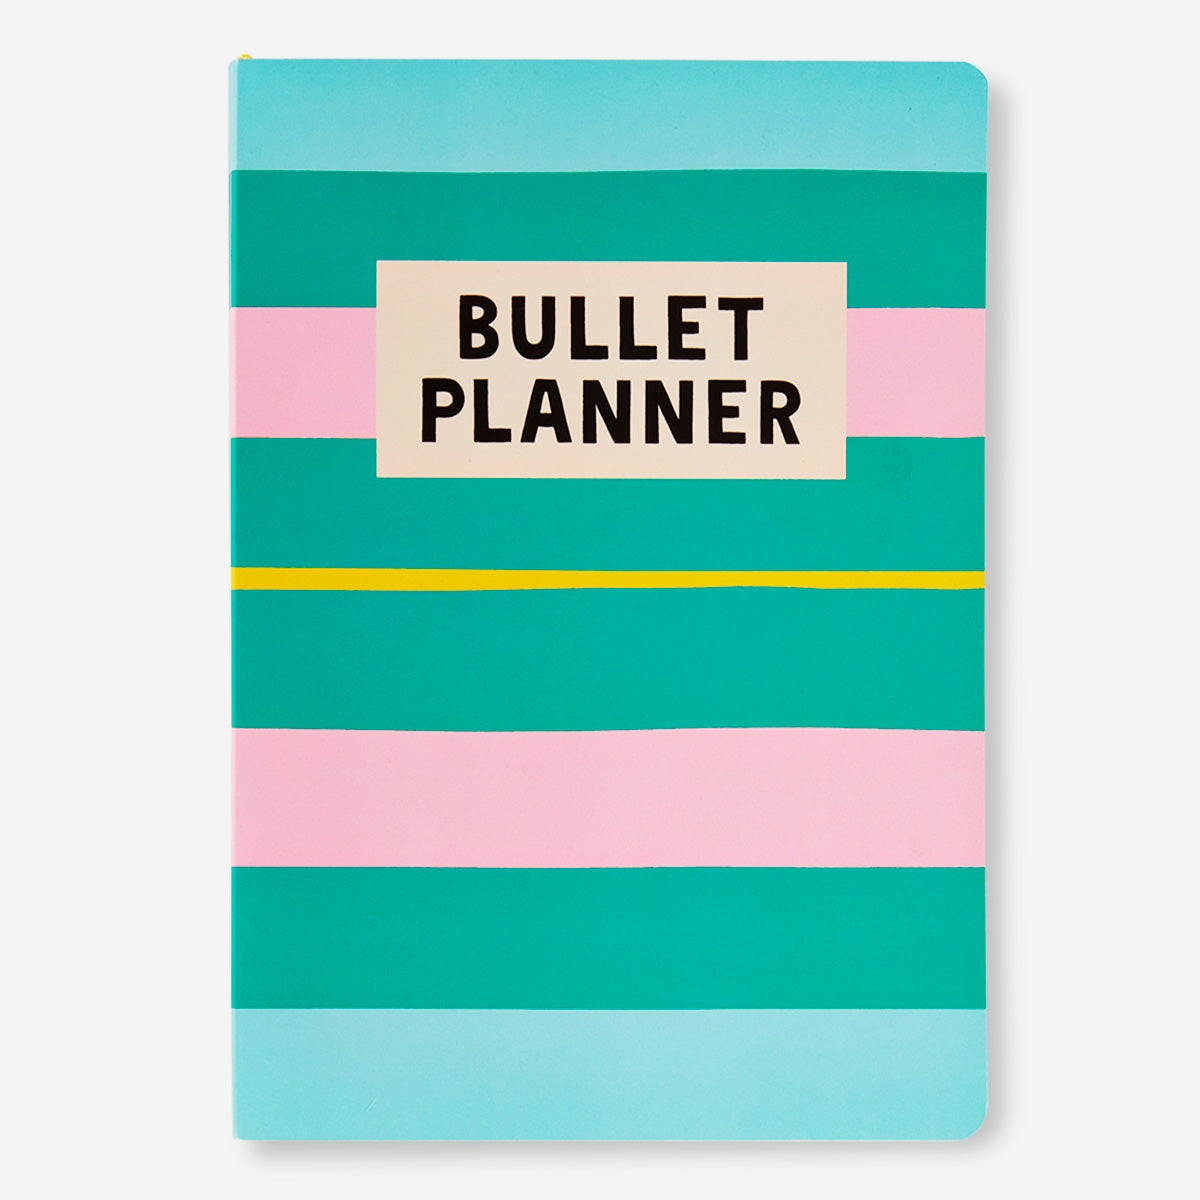 Bullet planner. A5 Office Flying Tiger Copenhagen 